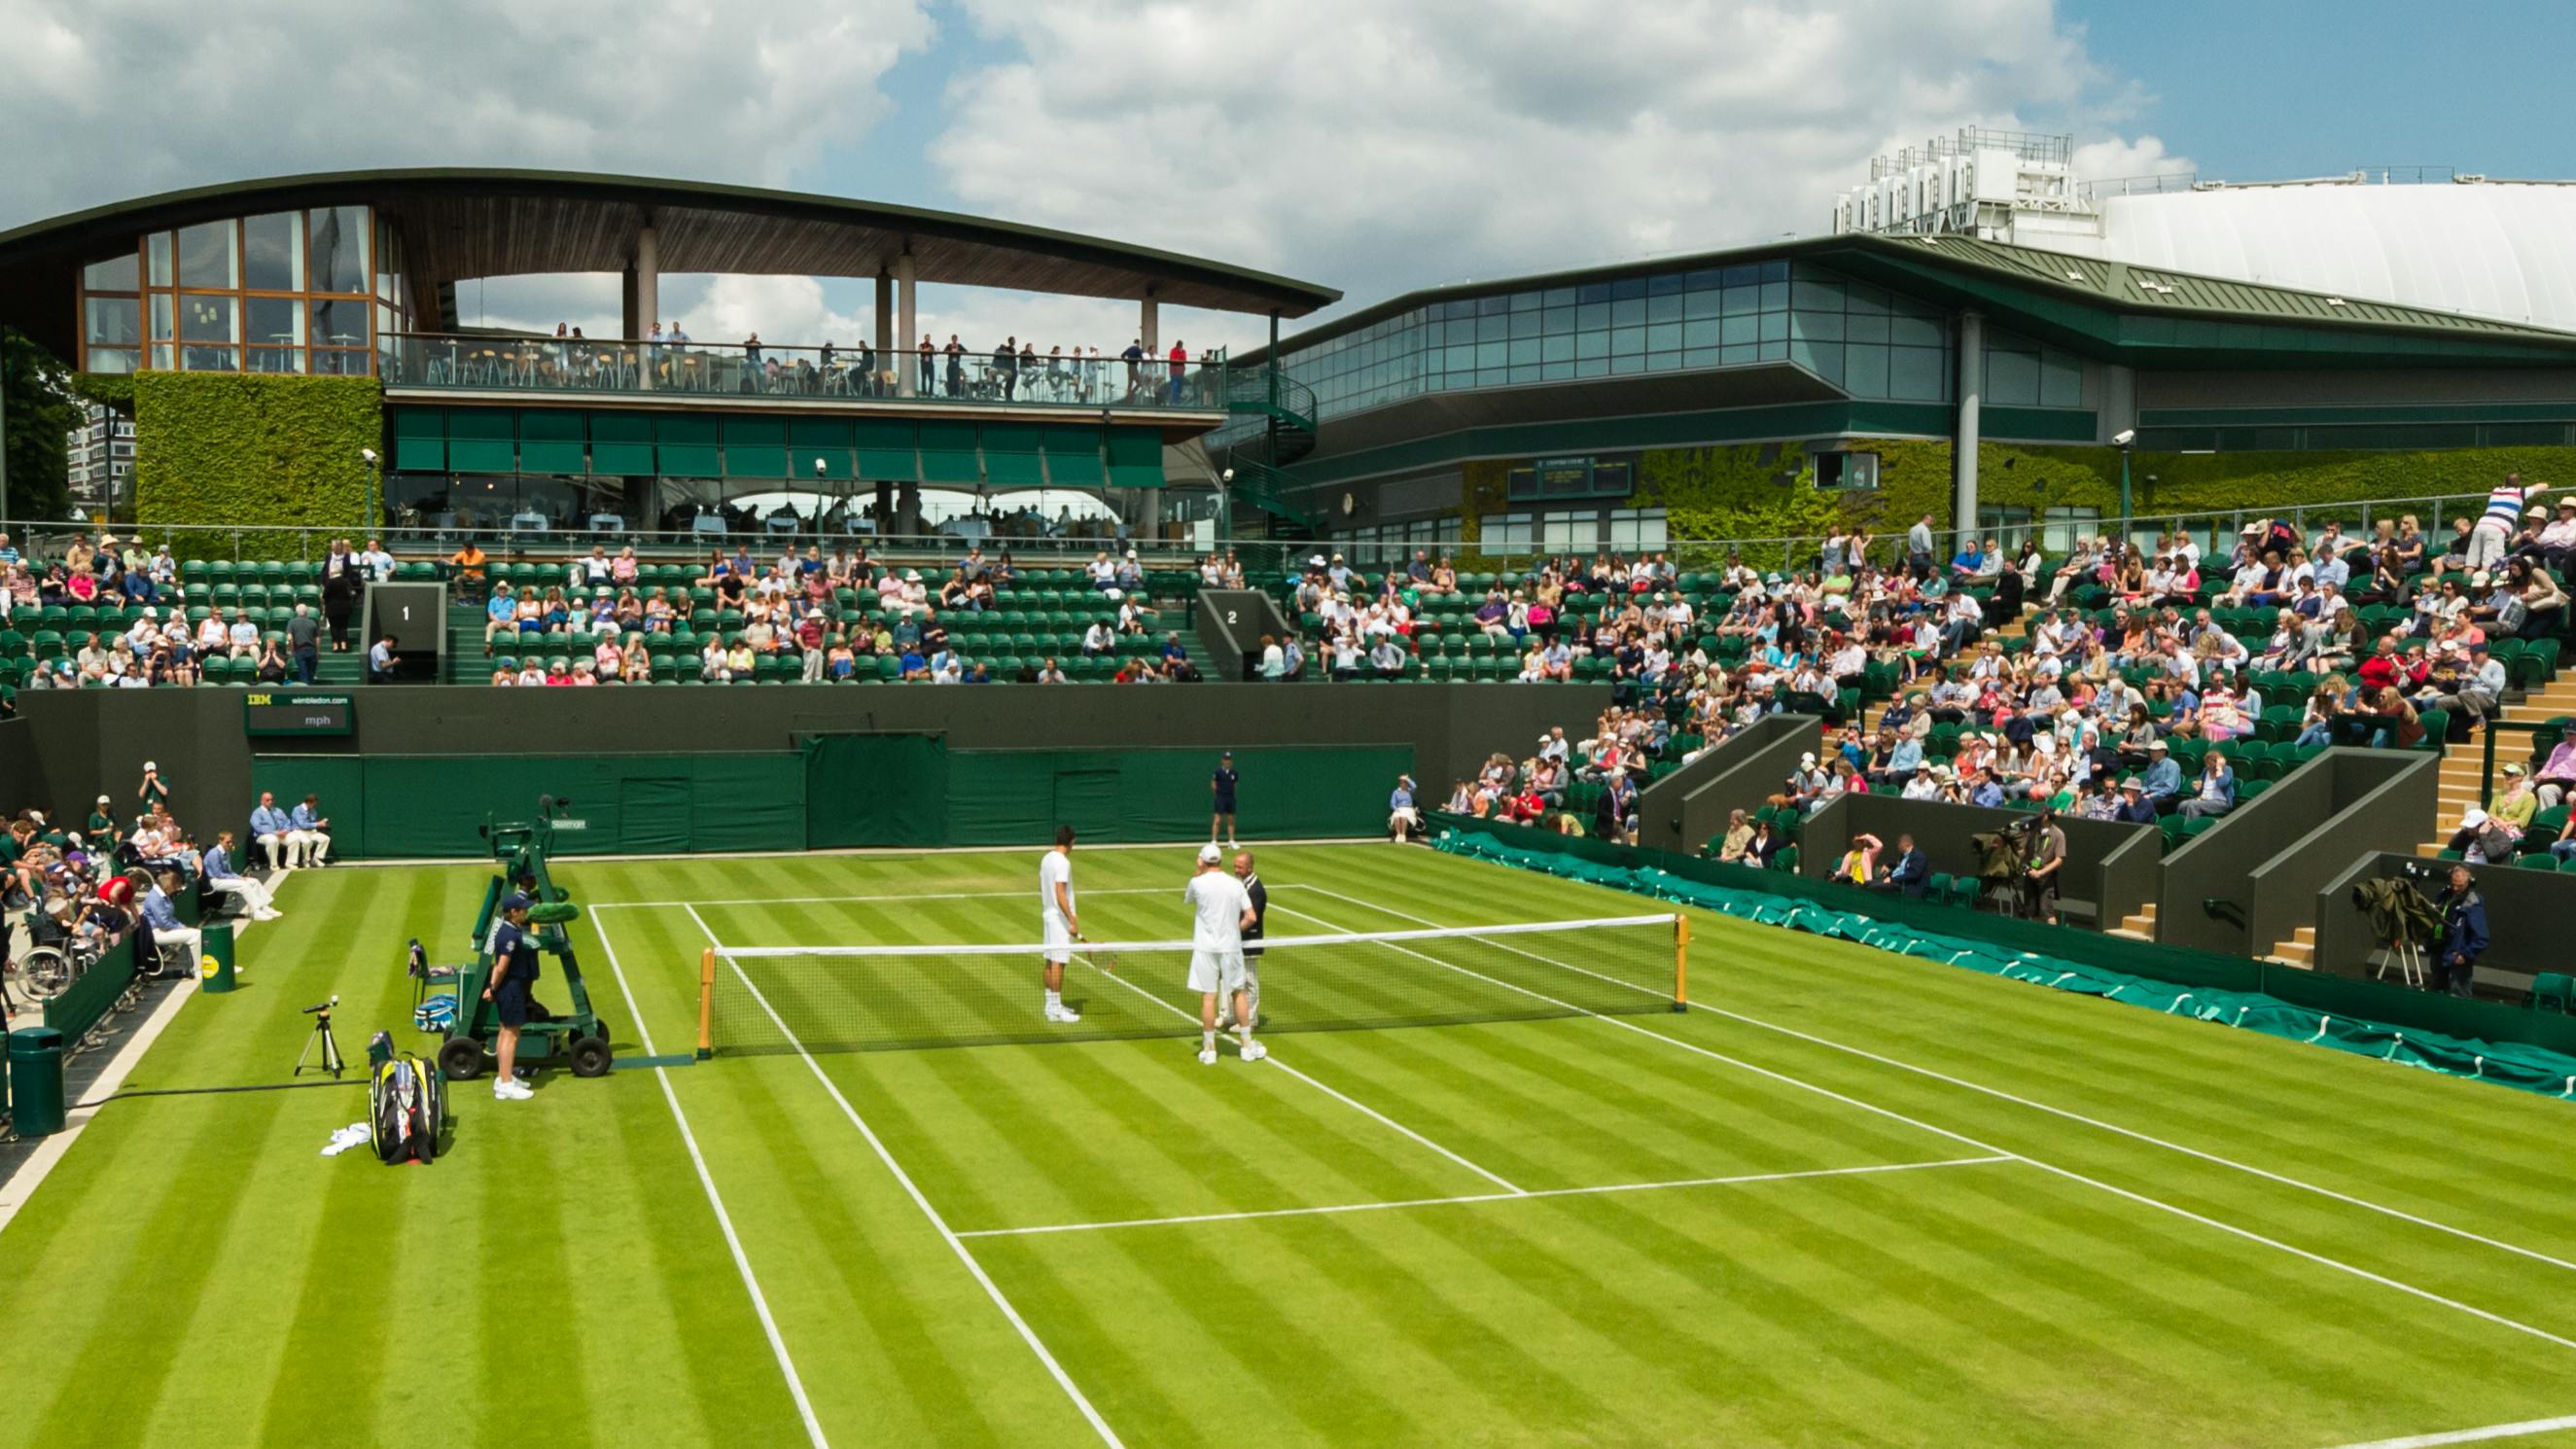 The grass court at Wimbledon during a match. 